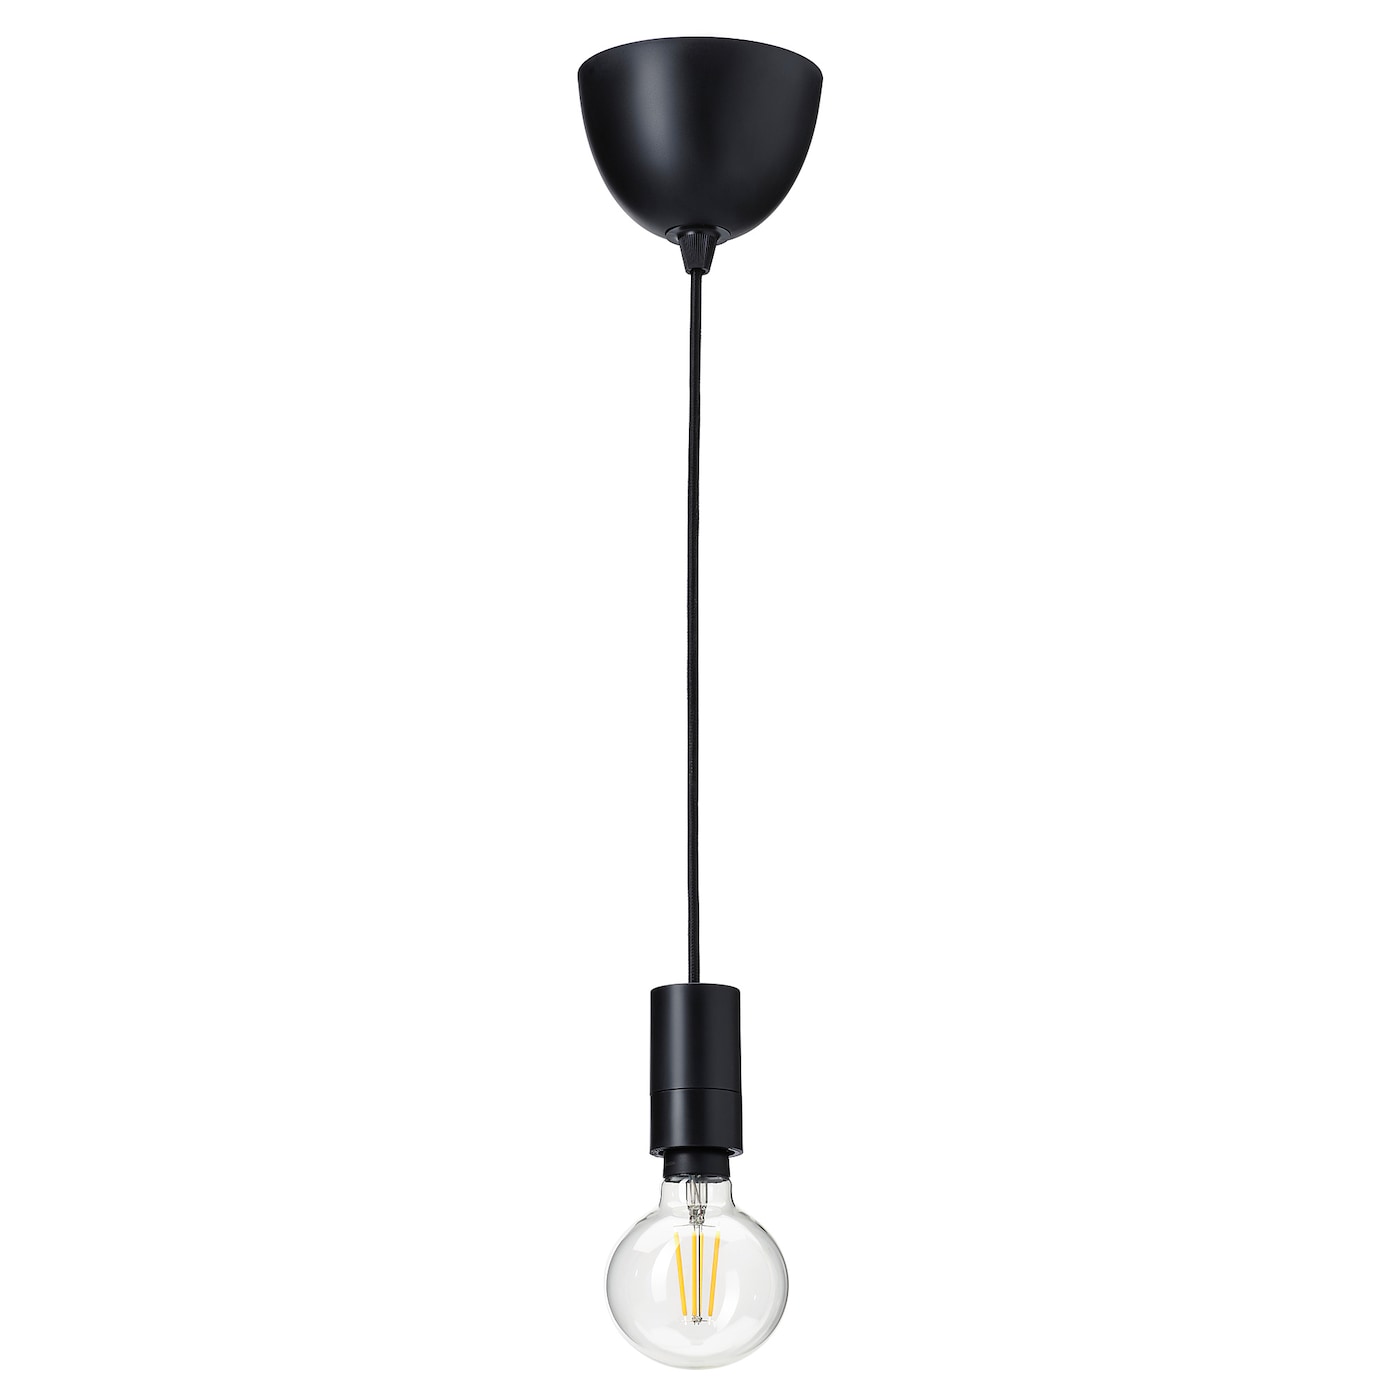 Подвесной светильник - SUNNEBY / TRADFRI IKEA / СУННЕБЮ / ТРОДФРИ ИКЕА, стекло